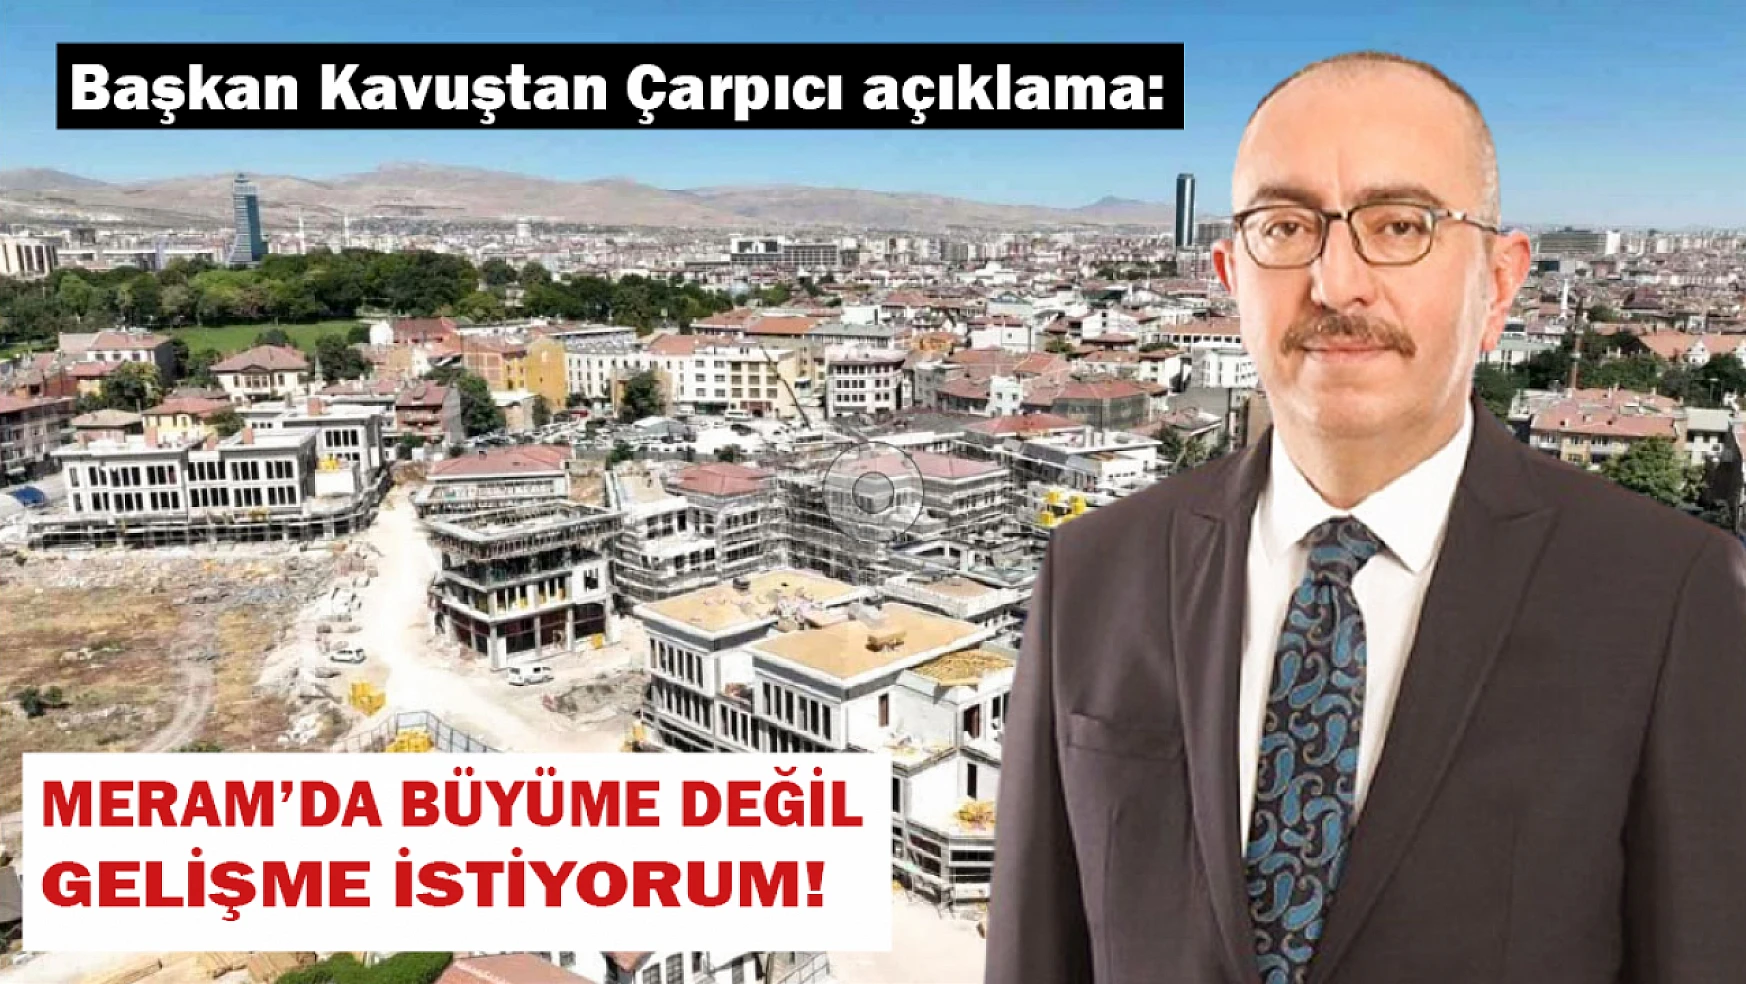 Meram Belediye Başkanı Mustafa Kavuş çarpıcı açıklamalarda bulundu!